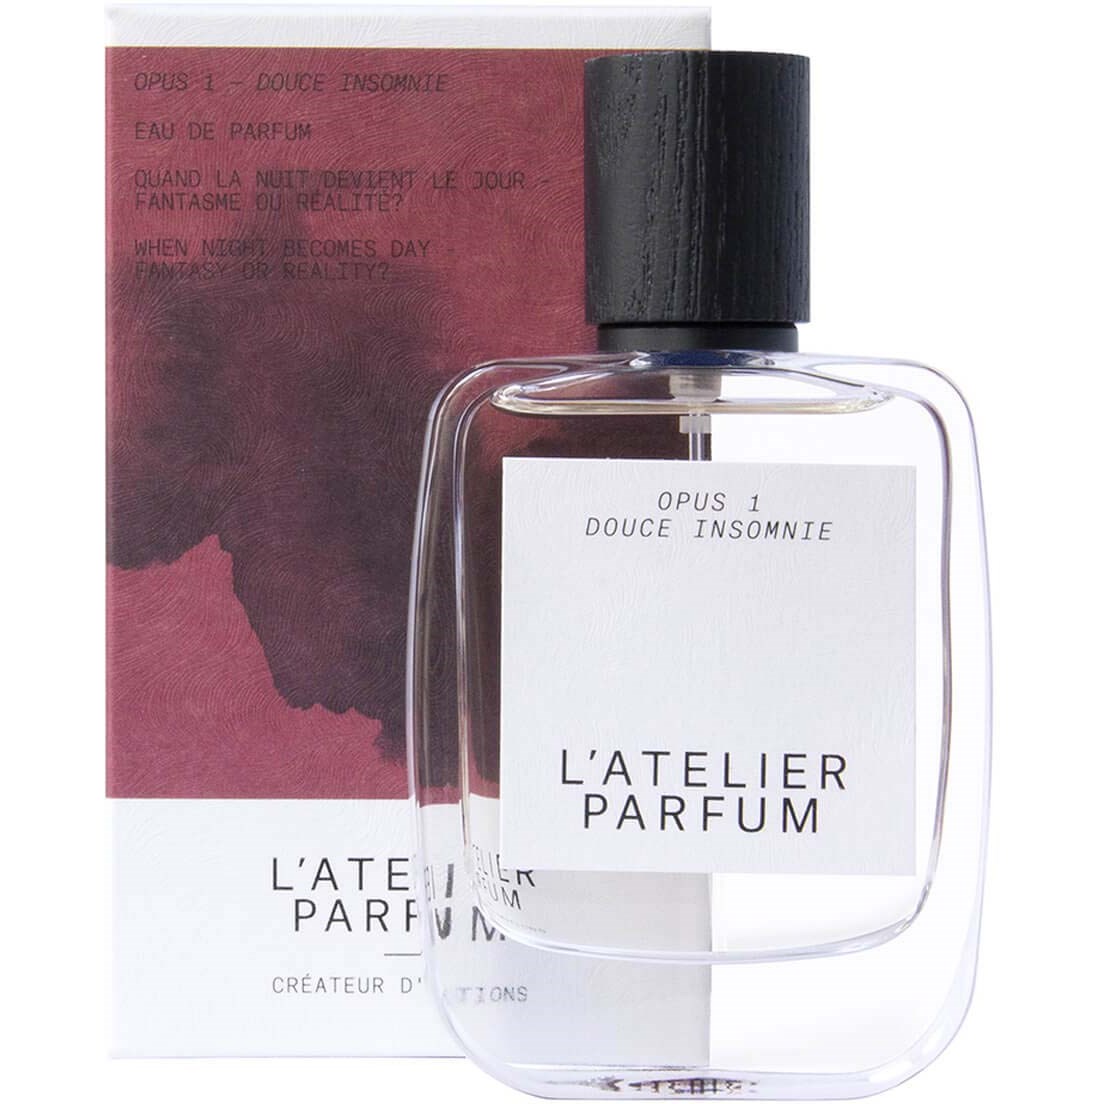 L'Atelier Parfum Opus 1 Douce Insomnie Eau de Parfum 50 ml